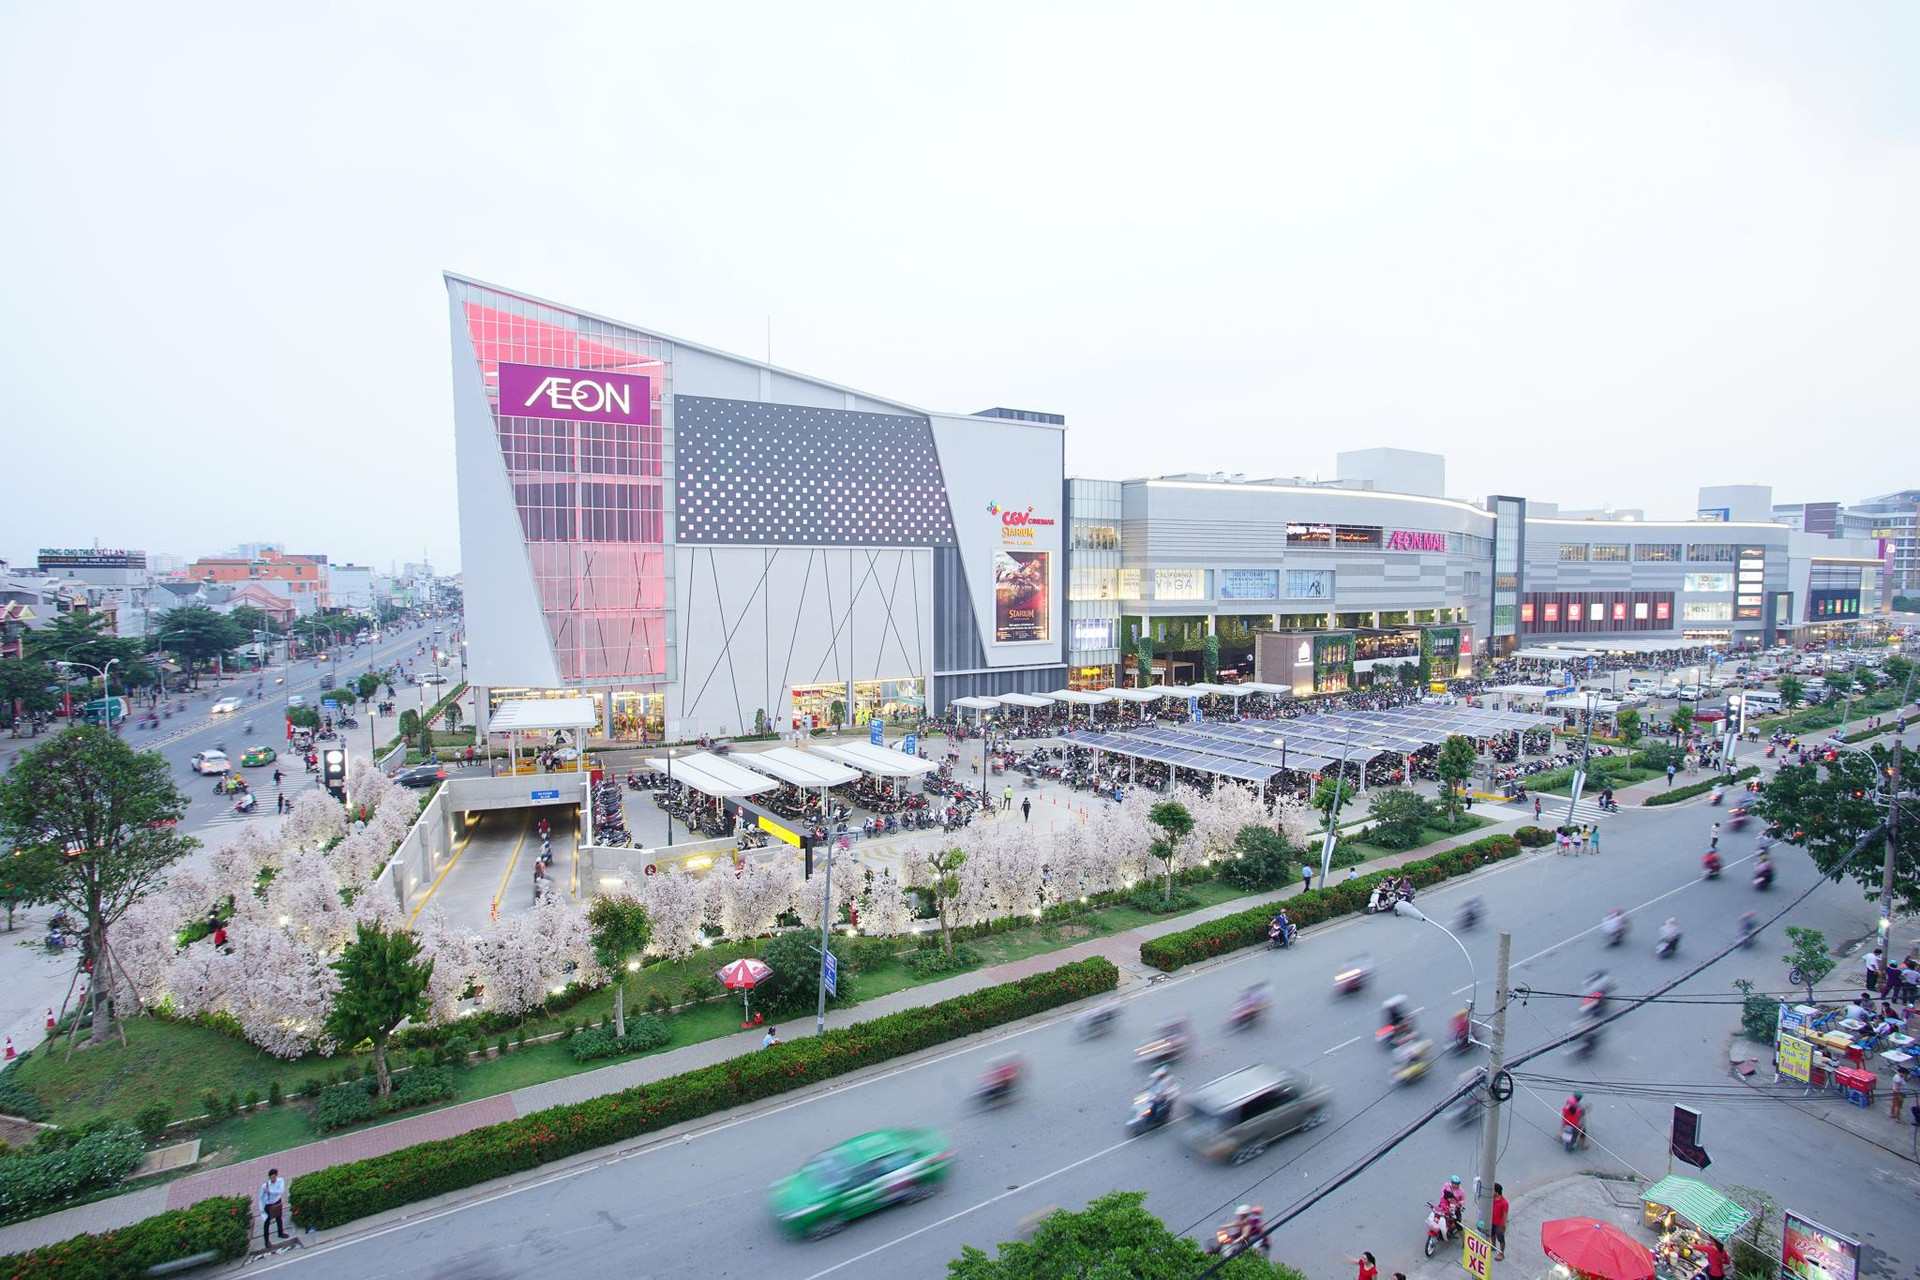 Aeon muốn xây 2 TTTM tại Cần Thơ và Bắc Giang, mỗi trung tâm trị giá 250 triệu USD - Ảnh 1.